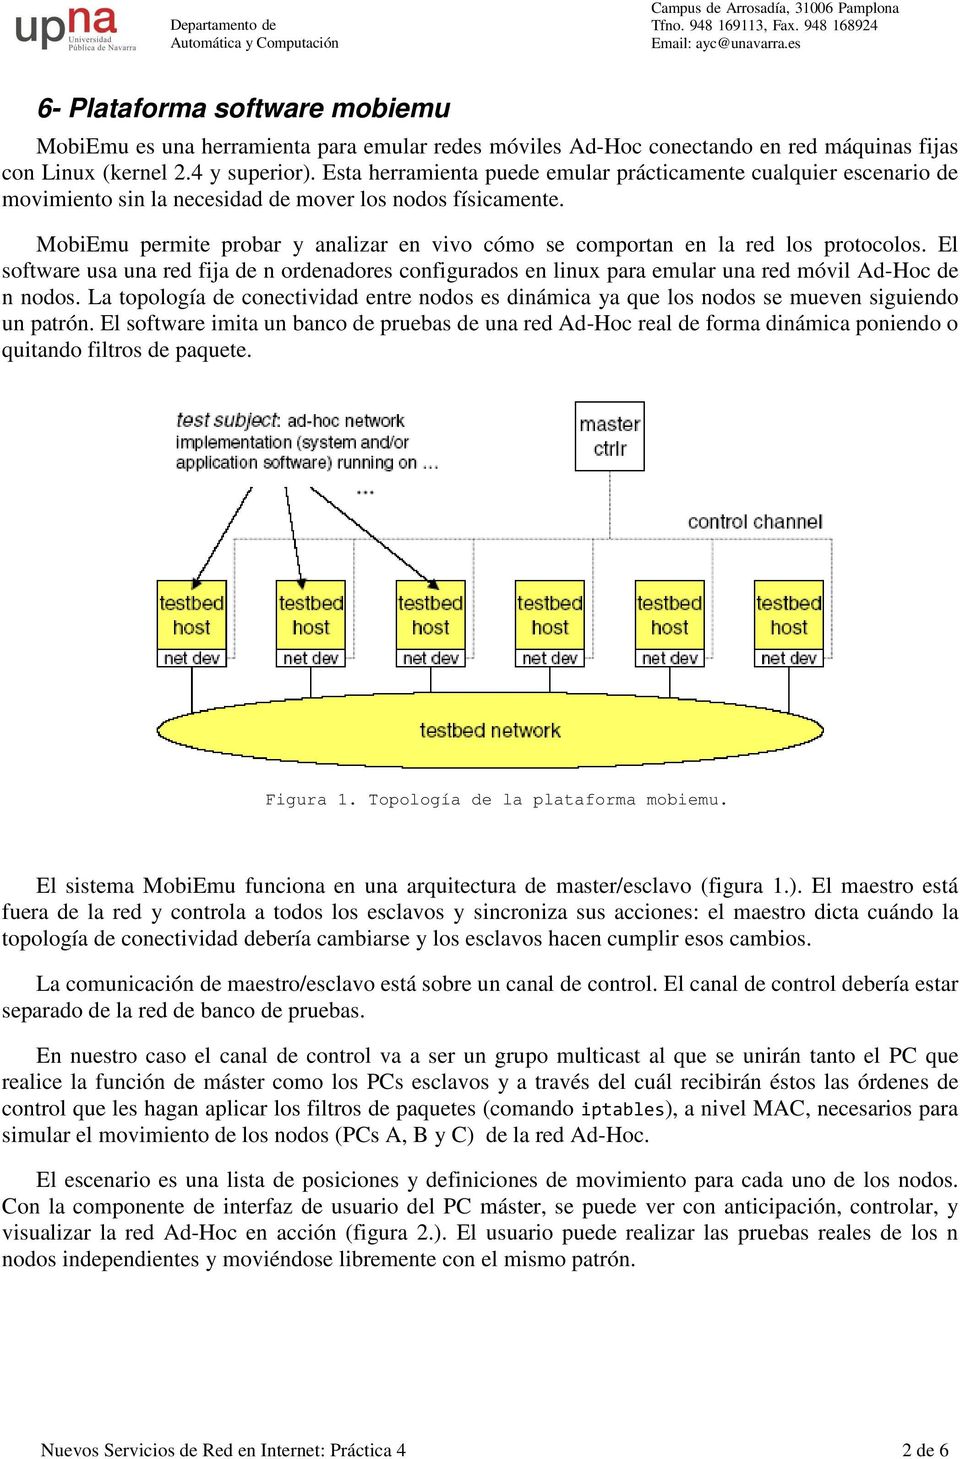 MobiEmu permite probar y analizar en vivo cómo se comportan en la red los protocolos. El software usa una red fija de n ordenadores configurados en linux para emular una red móvil Ad-Hoc de n nodos.